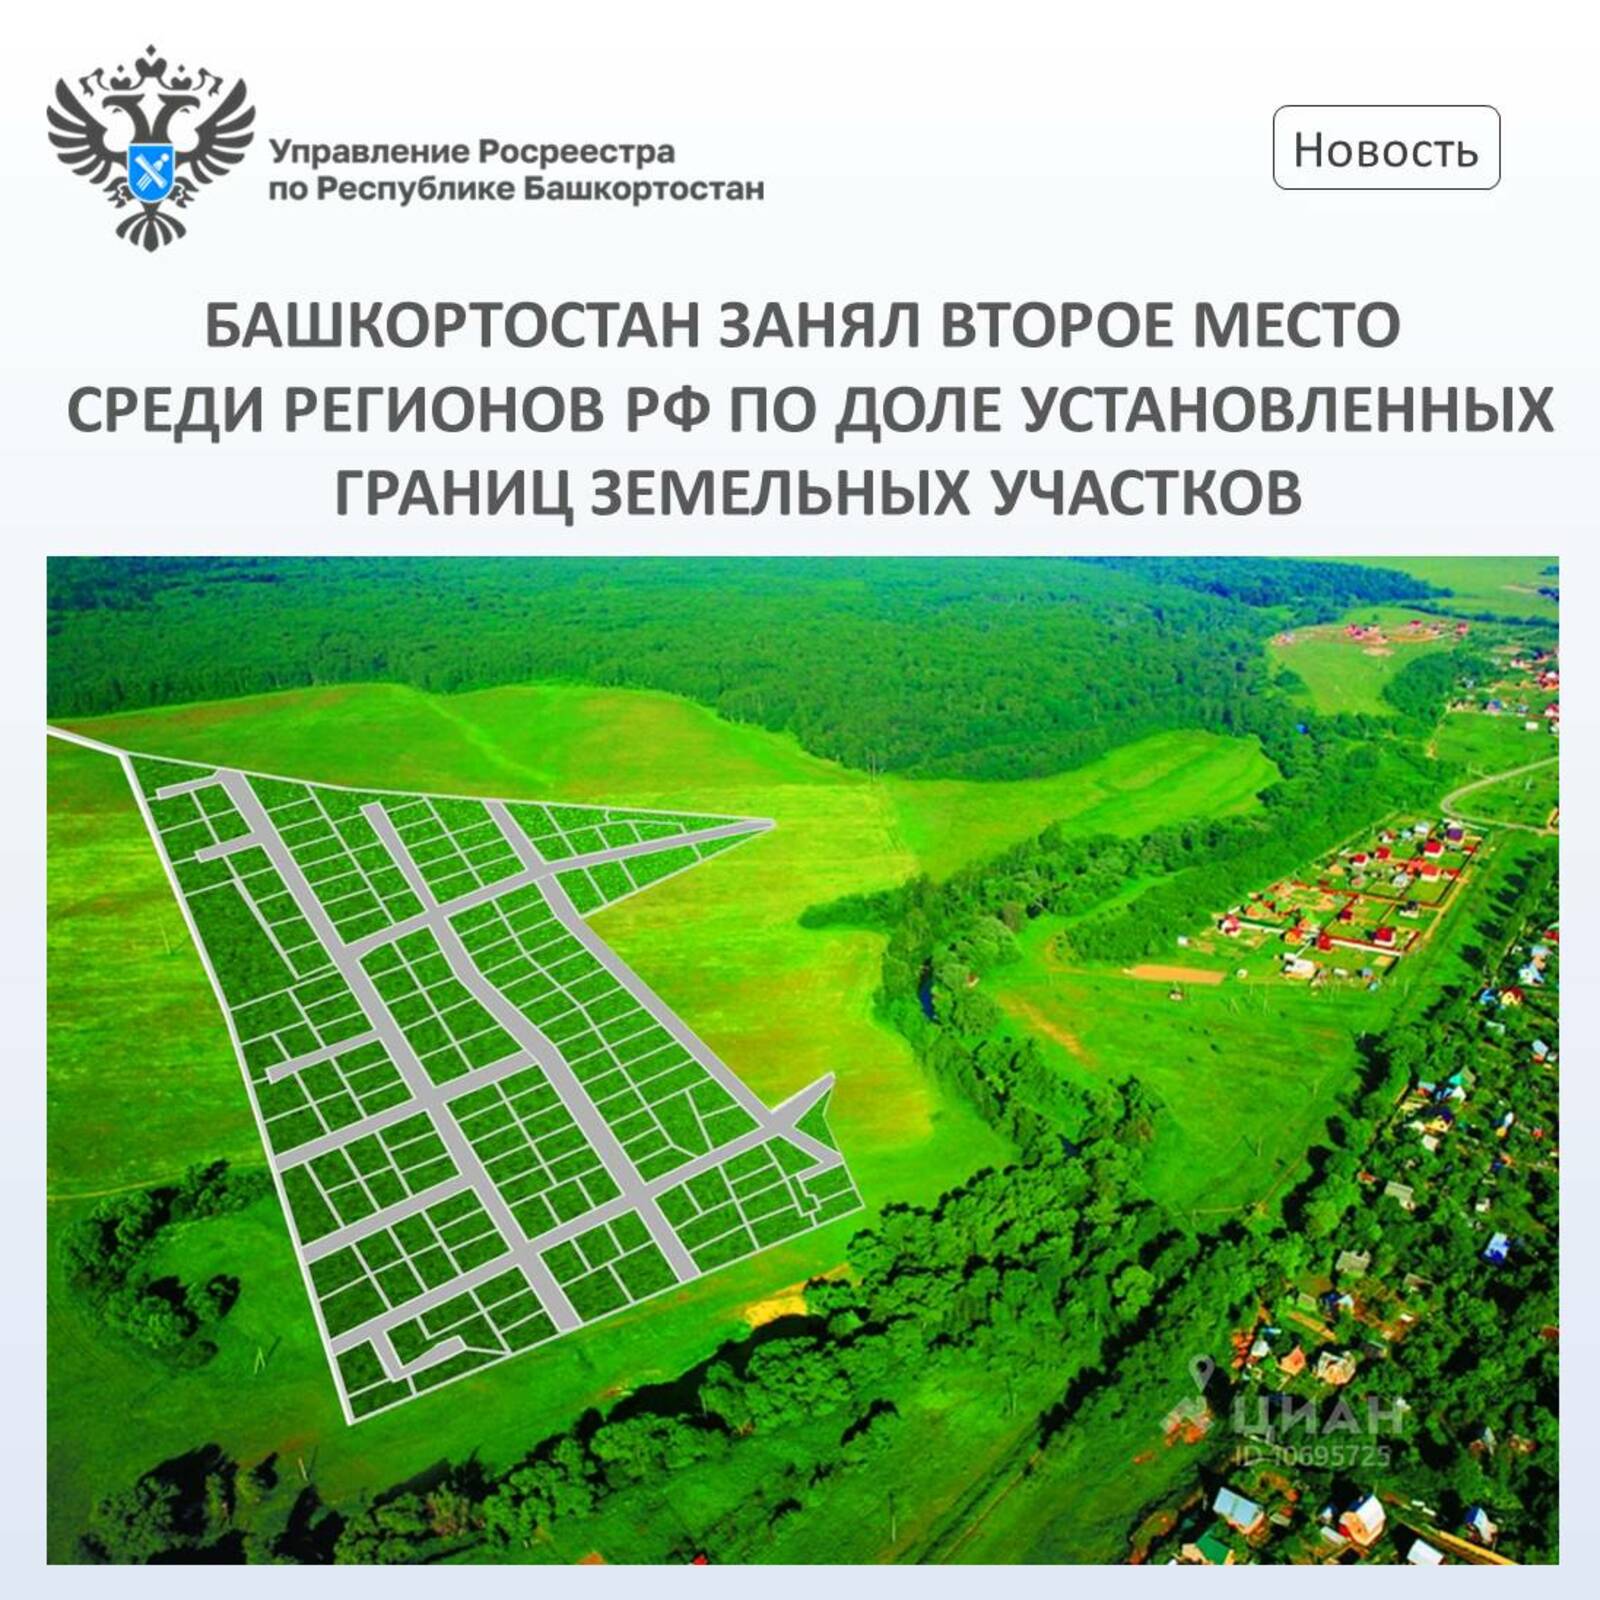 Башкирия на втором месте среди регионов России по доле установленных границ земельных участков